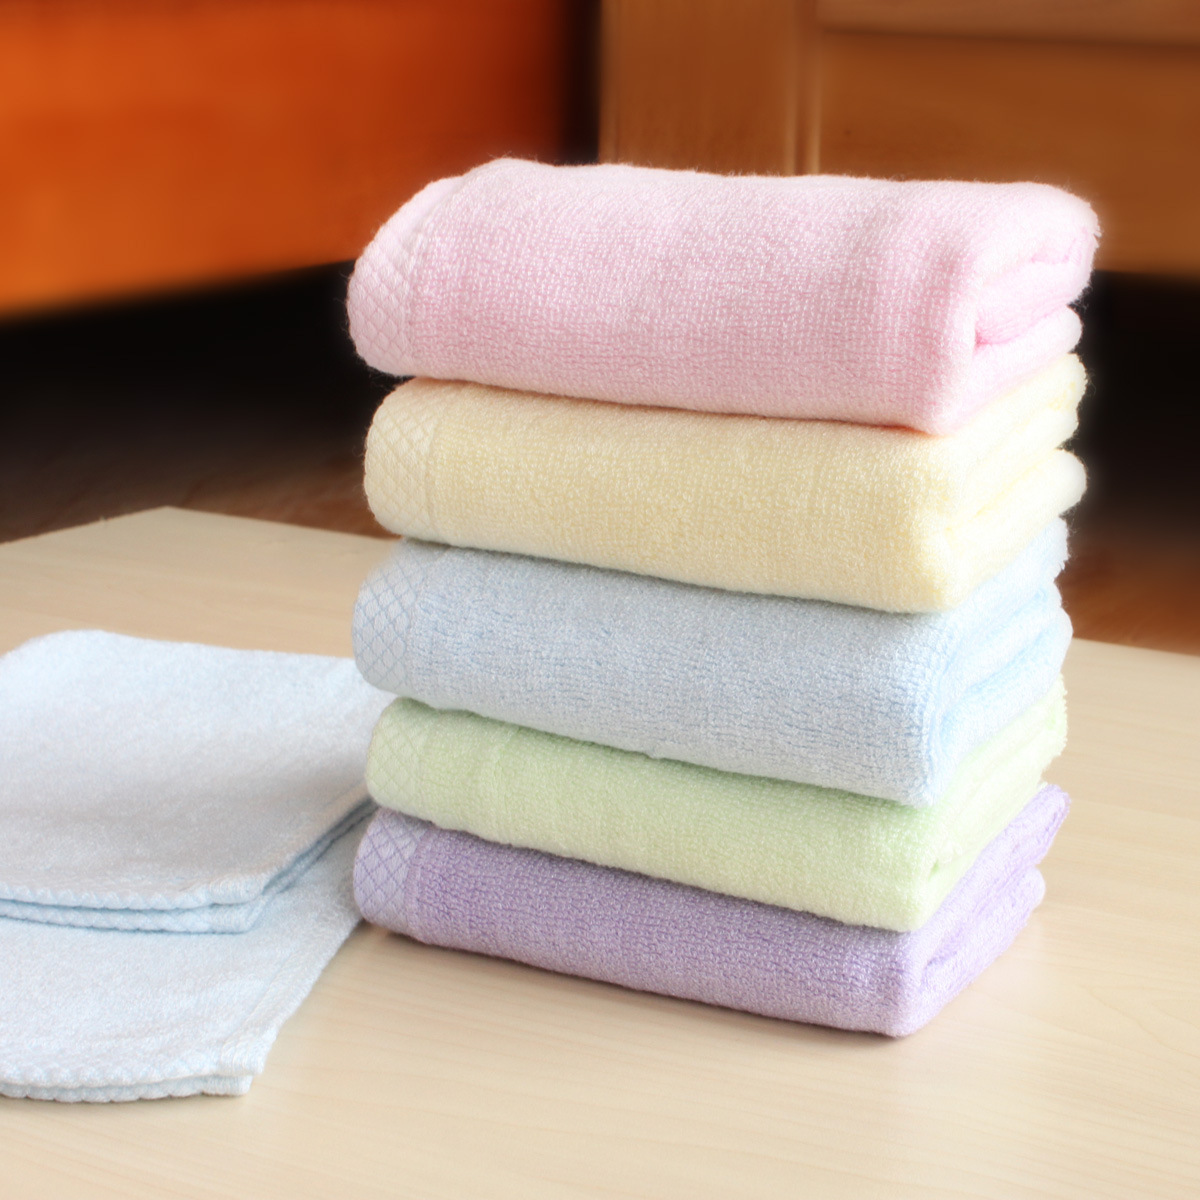 小毛巾-美容院包头小毛巾--阿里巴巴采购平台求